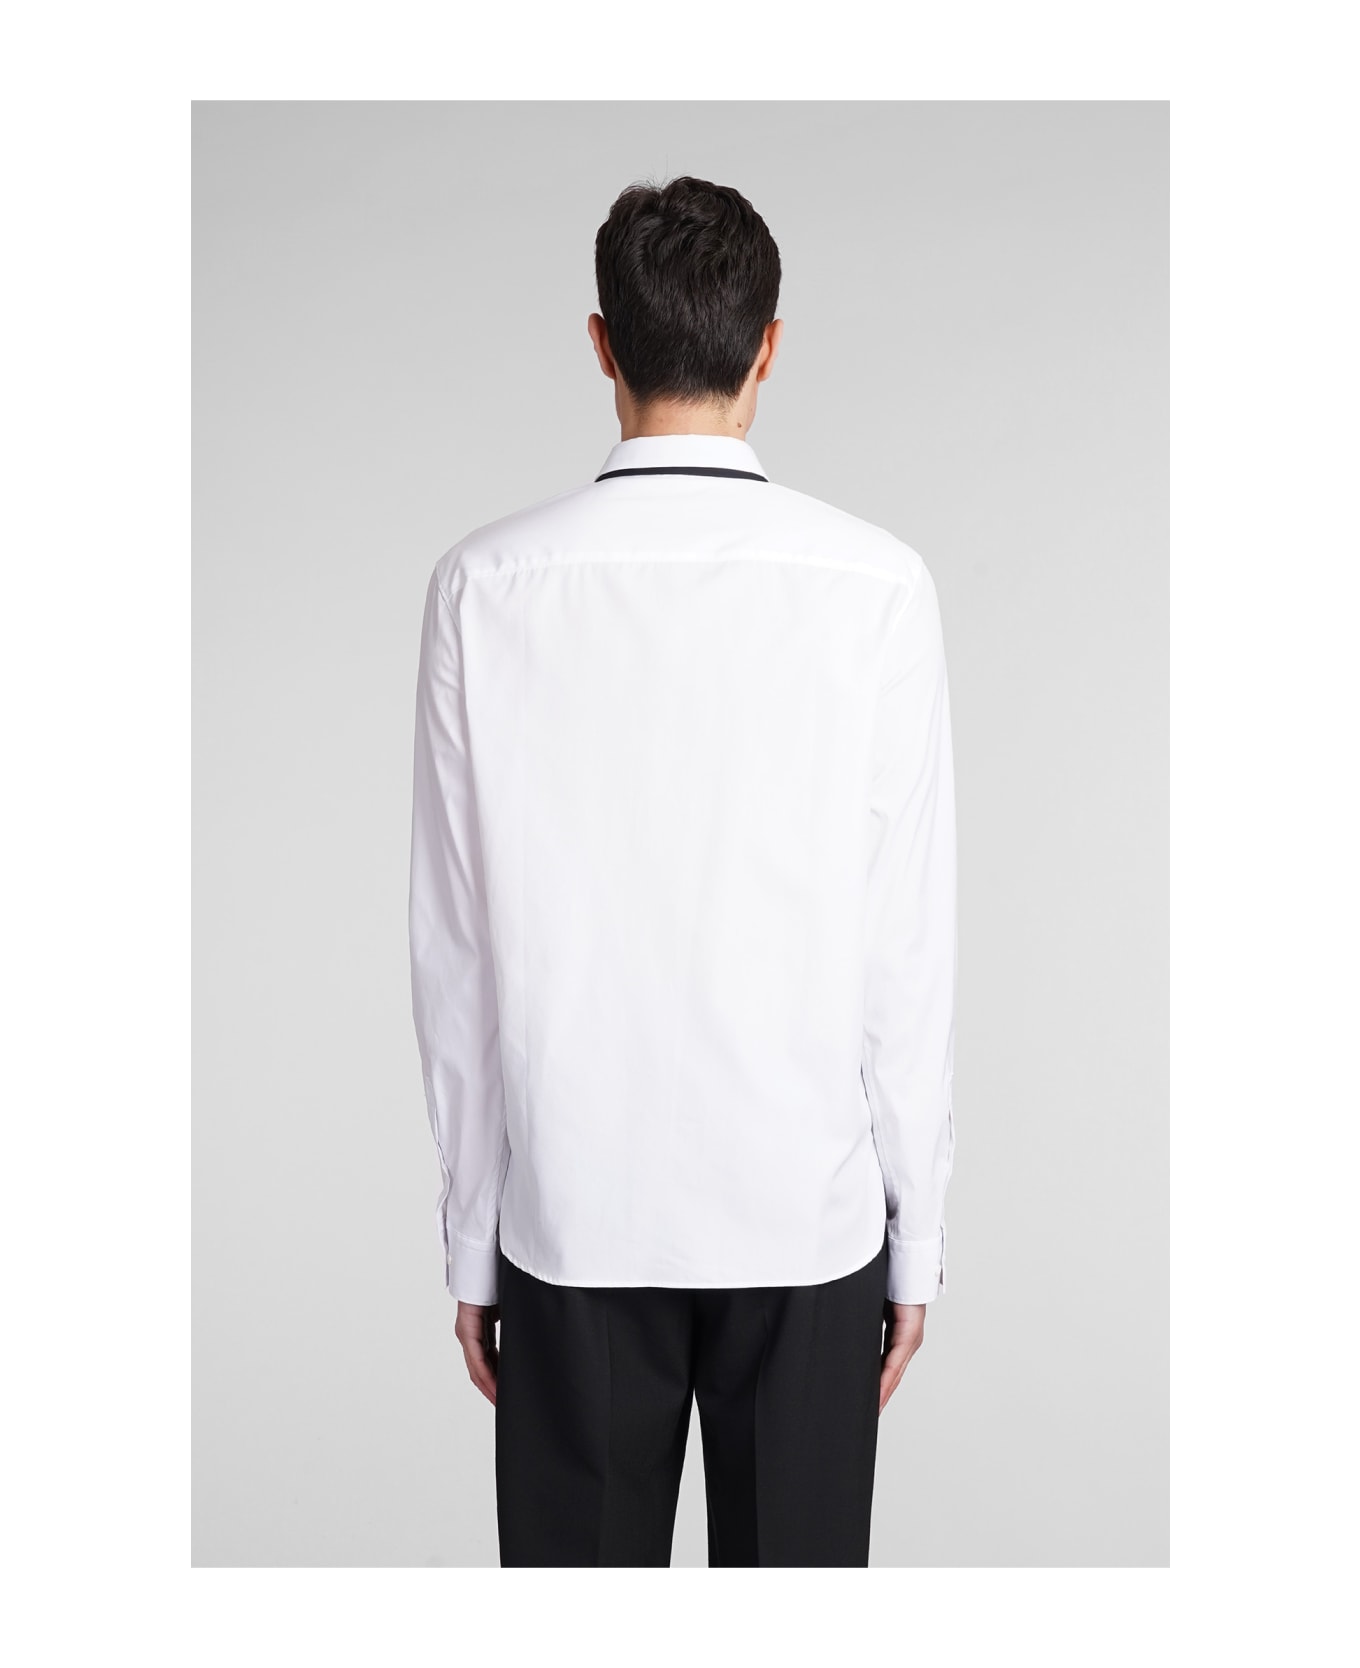 Neil Barrett Shirt In White Cotton - white